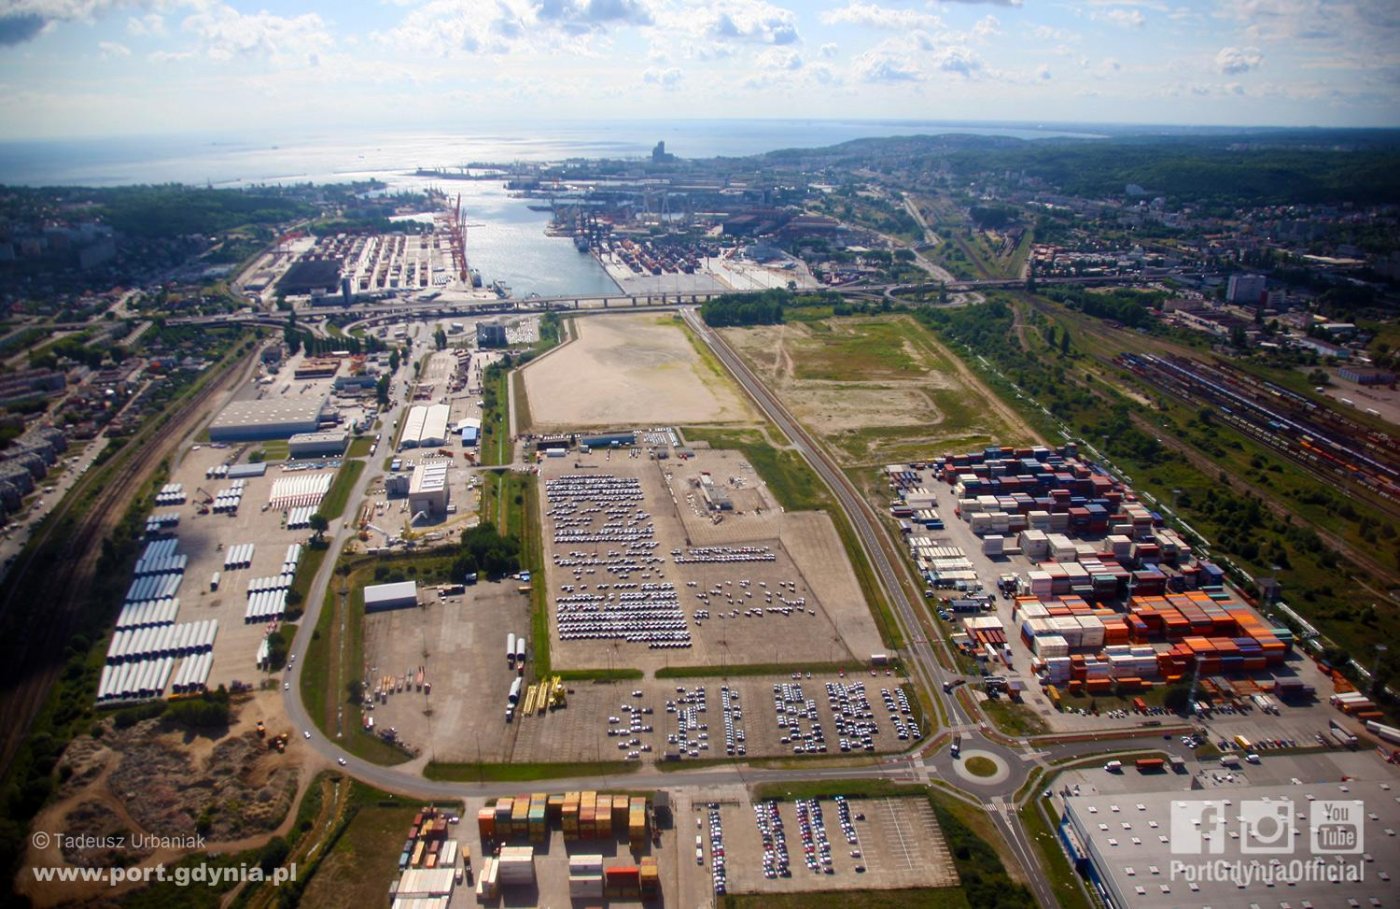 Tereny logistyczne Portu Gdynia, na których ma powstać terminal intermodalny, fot. www.port.gdynia.pl